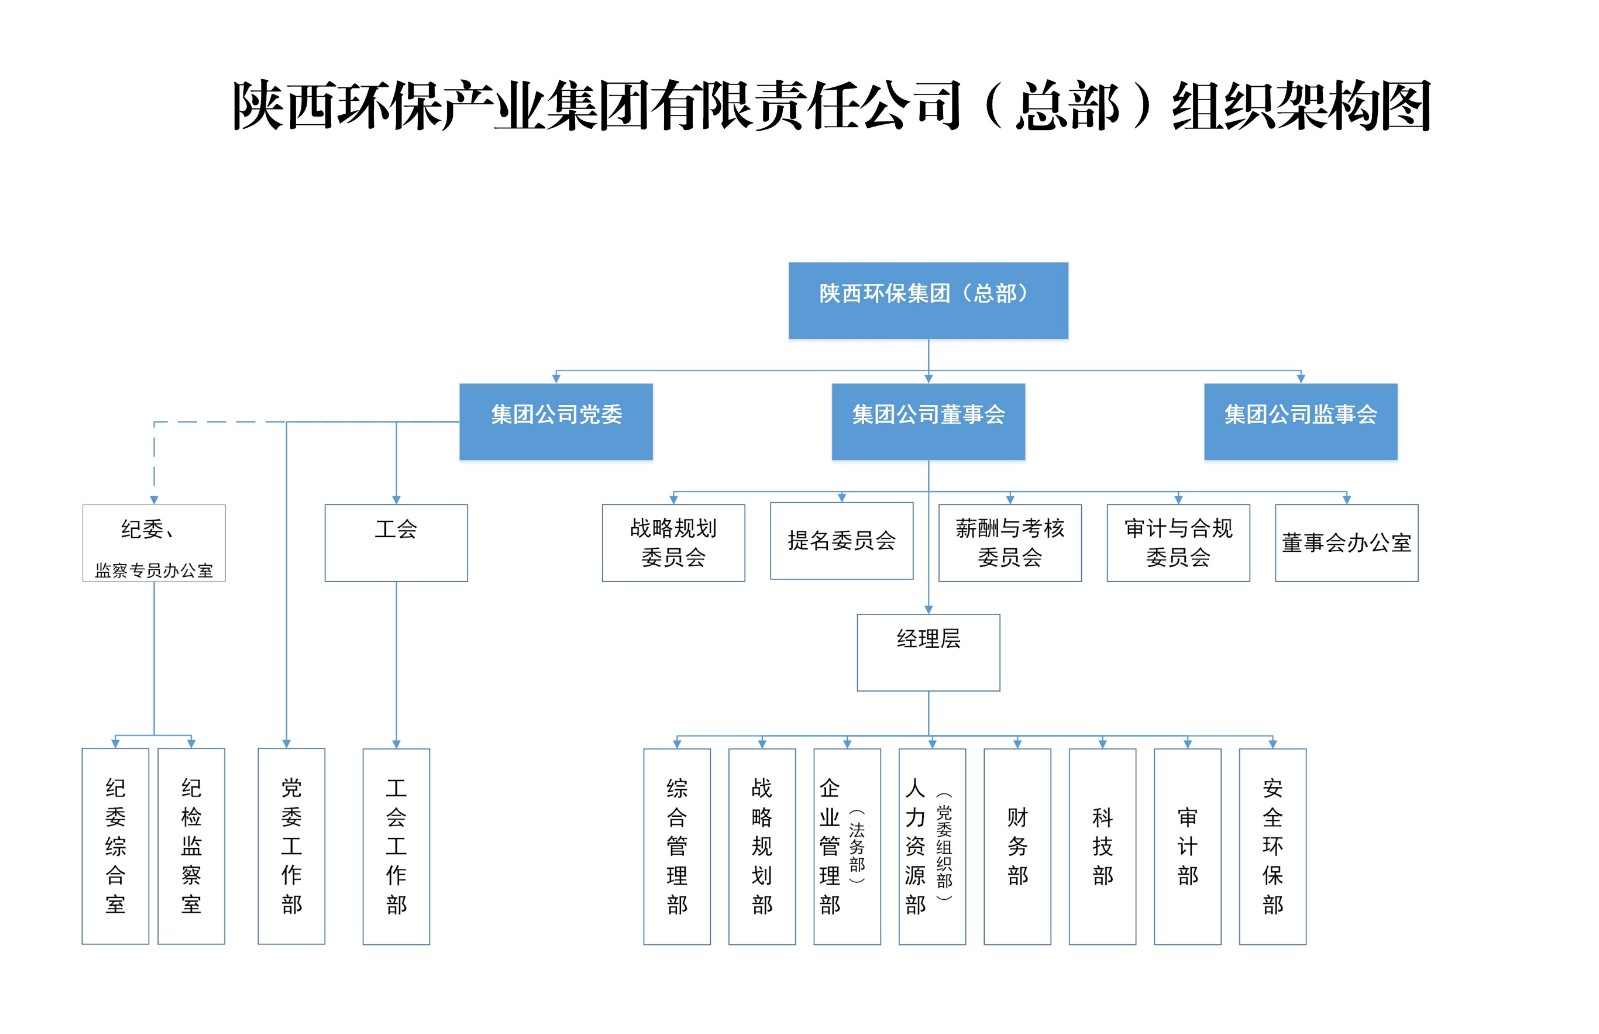 手机买球官网(中国)有限公司总部组织架构图.jpg